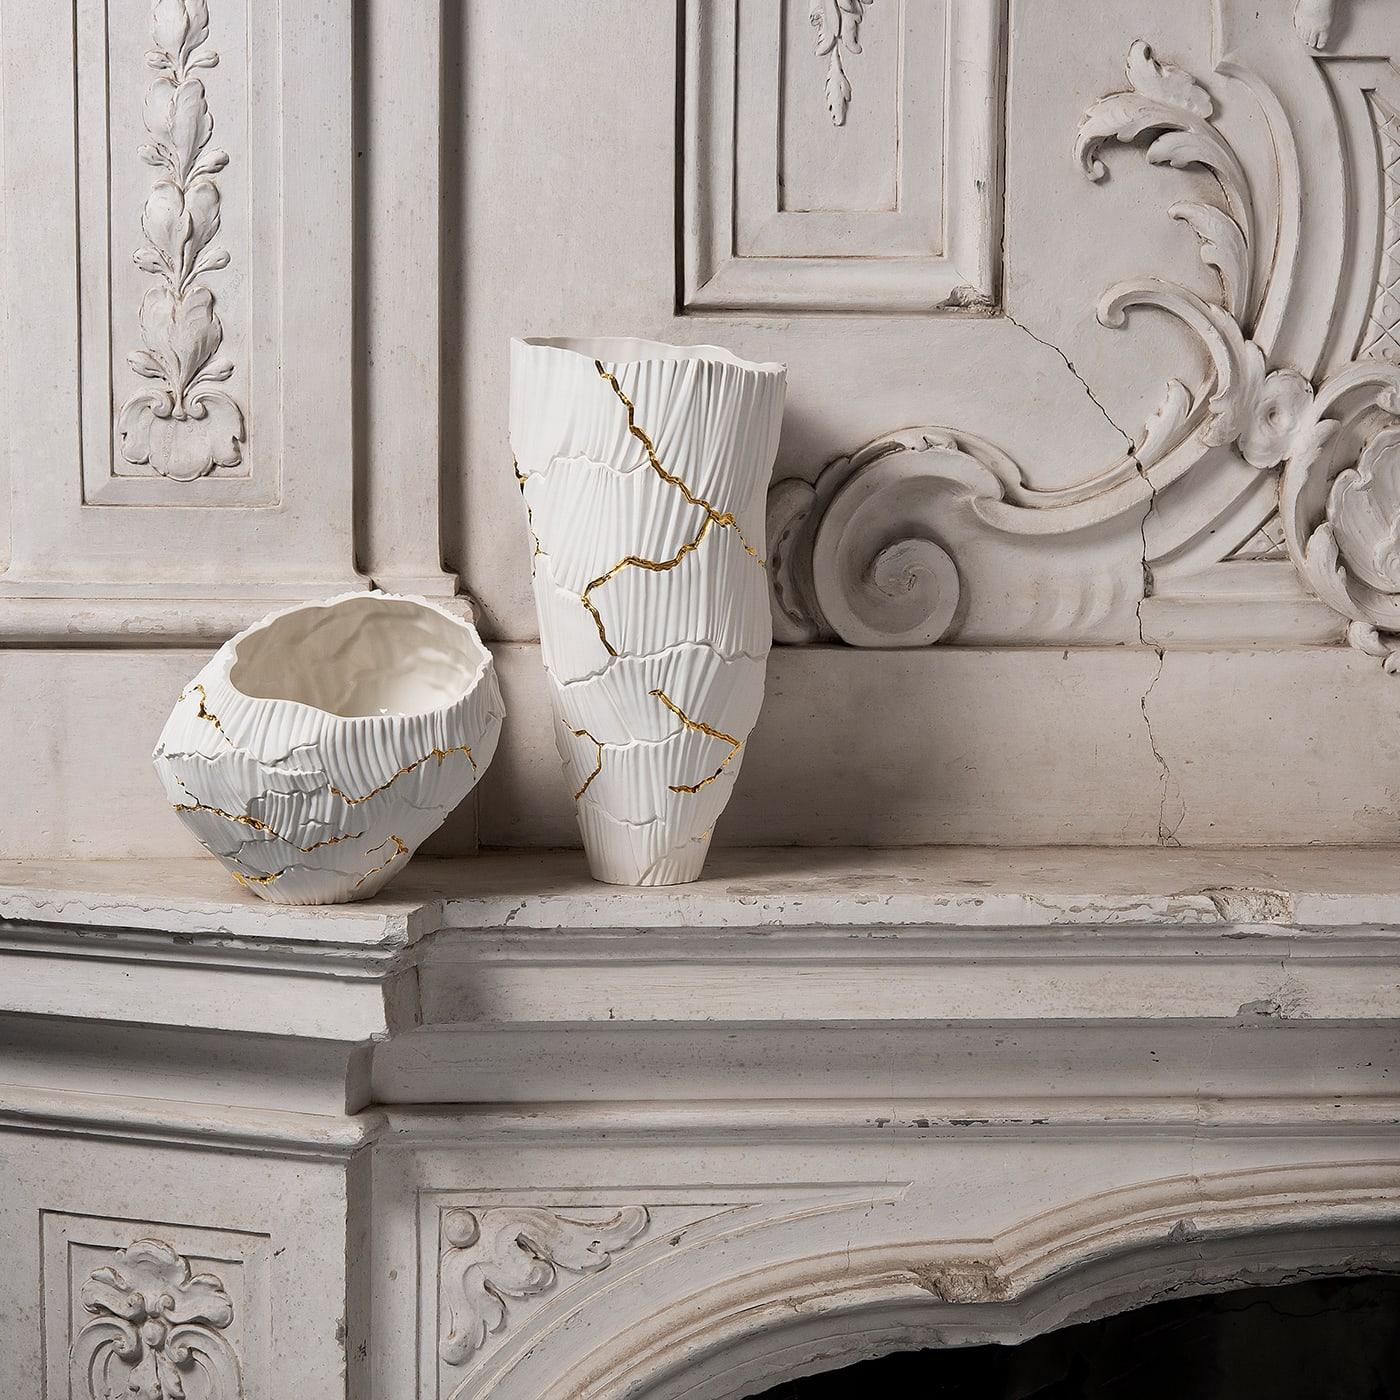 Zefiro ist eine dekorative Schale aus Porzellan, die zur Collection'S Anemos gehört. Die sanften Kurven der vom Wind geformten Kanäle schaffen einen einzigartigen Rhythmus auf der Oberfläche, unterbrochen von tiefen Rissen, wie ein trockenes Land,